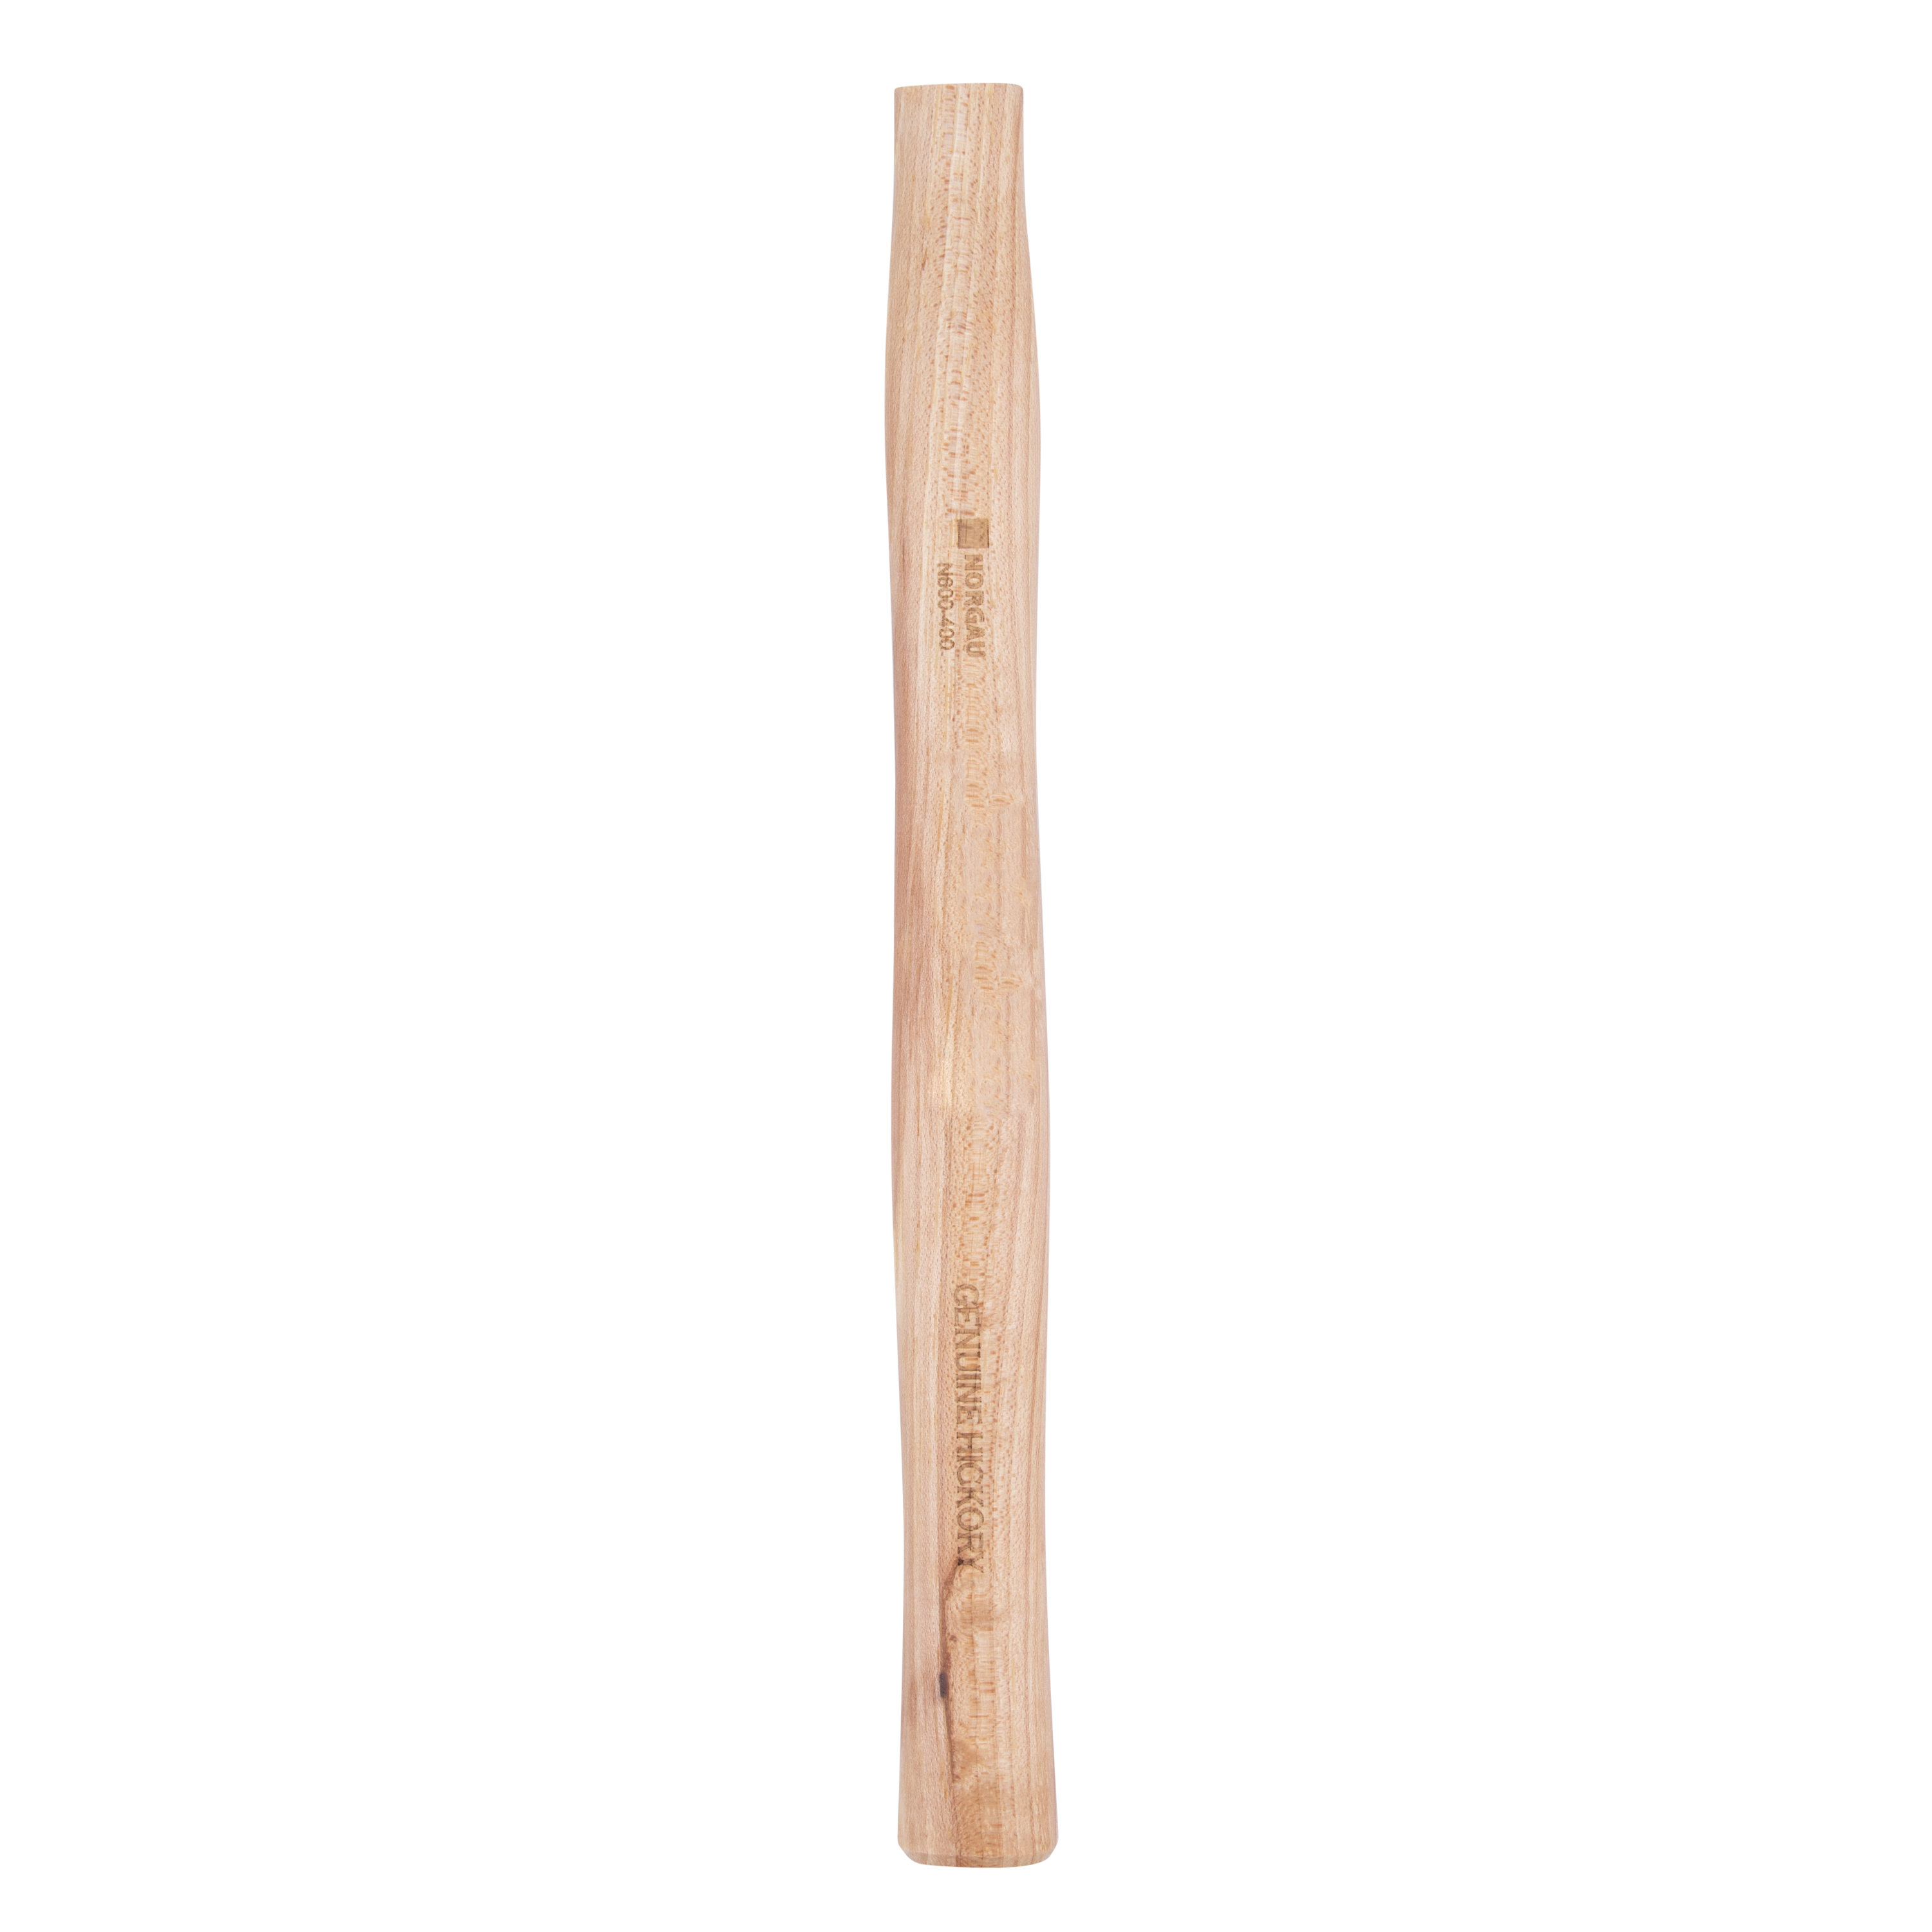 Рукоятка NORGAU Industrial запаснаядля молотка 400 г, из древесины гикори, 300 мм